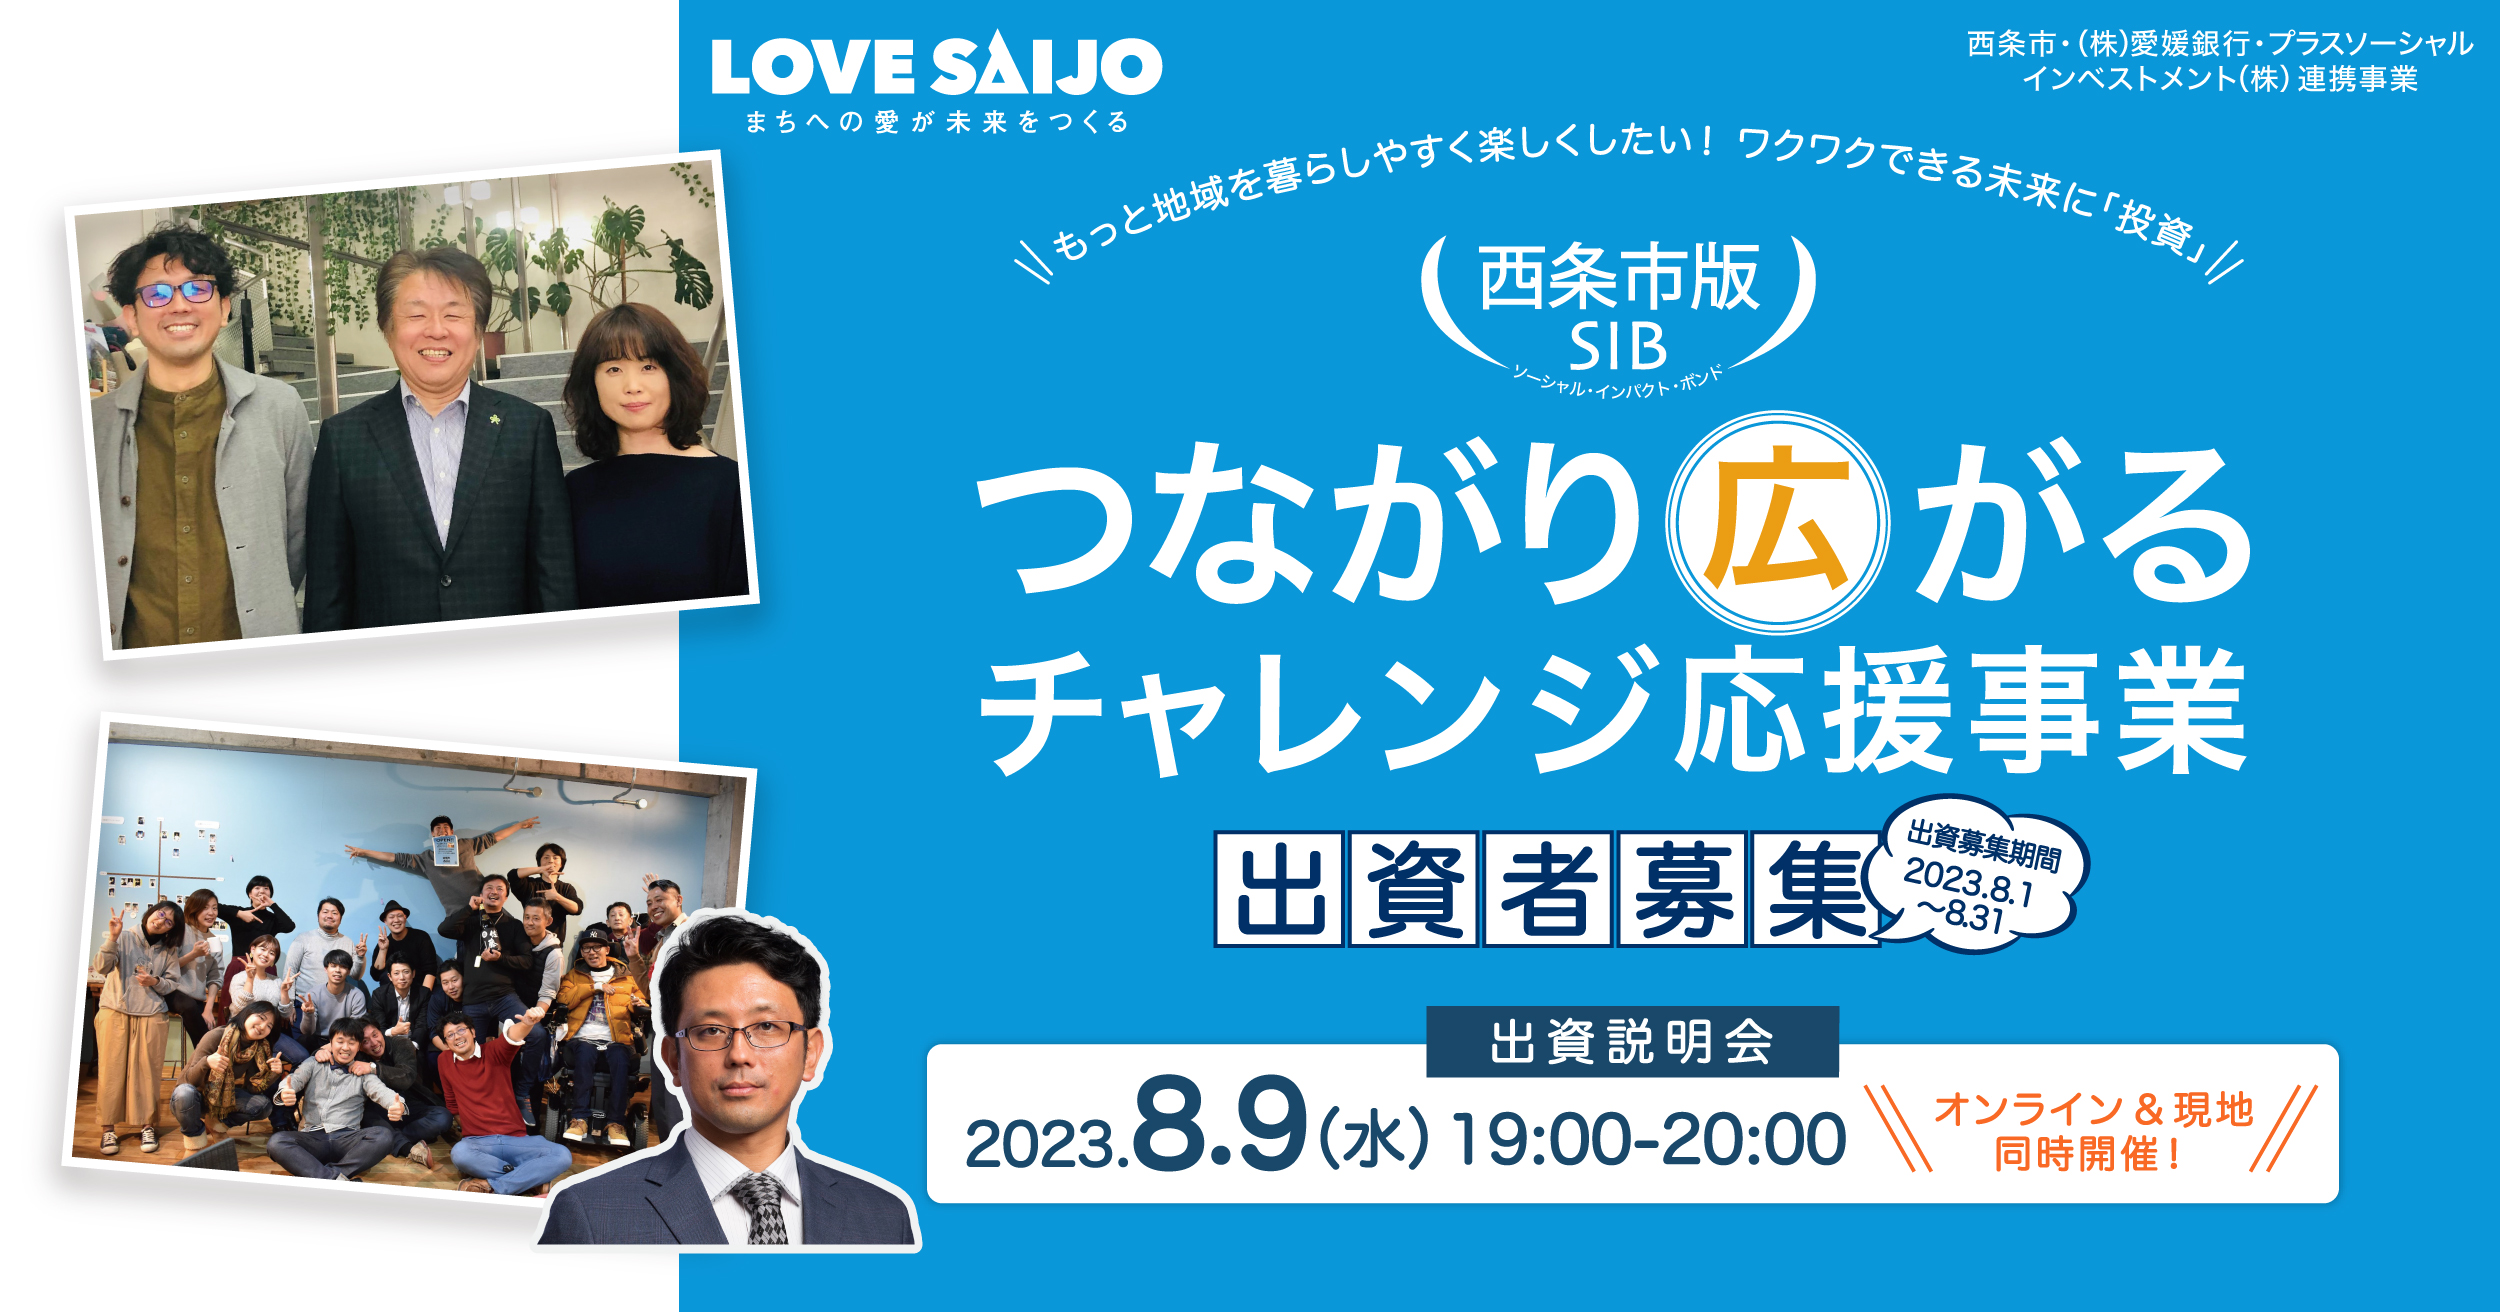 愛媛県 西条市版SIBの出資者募集を8/1(火)10時より開始、出資説明会を8/9(水)19時に開催します